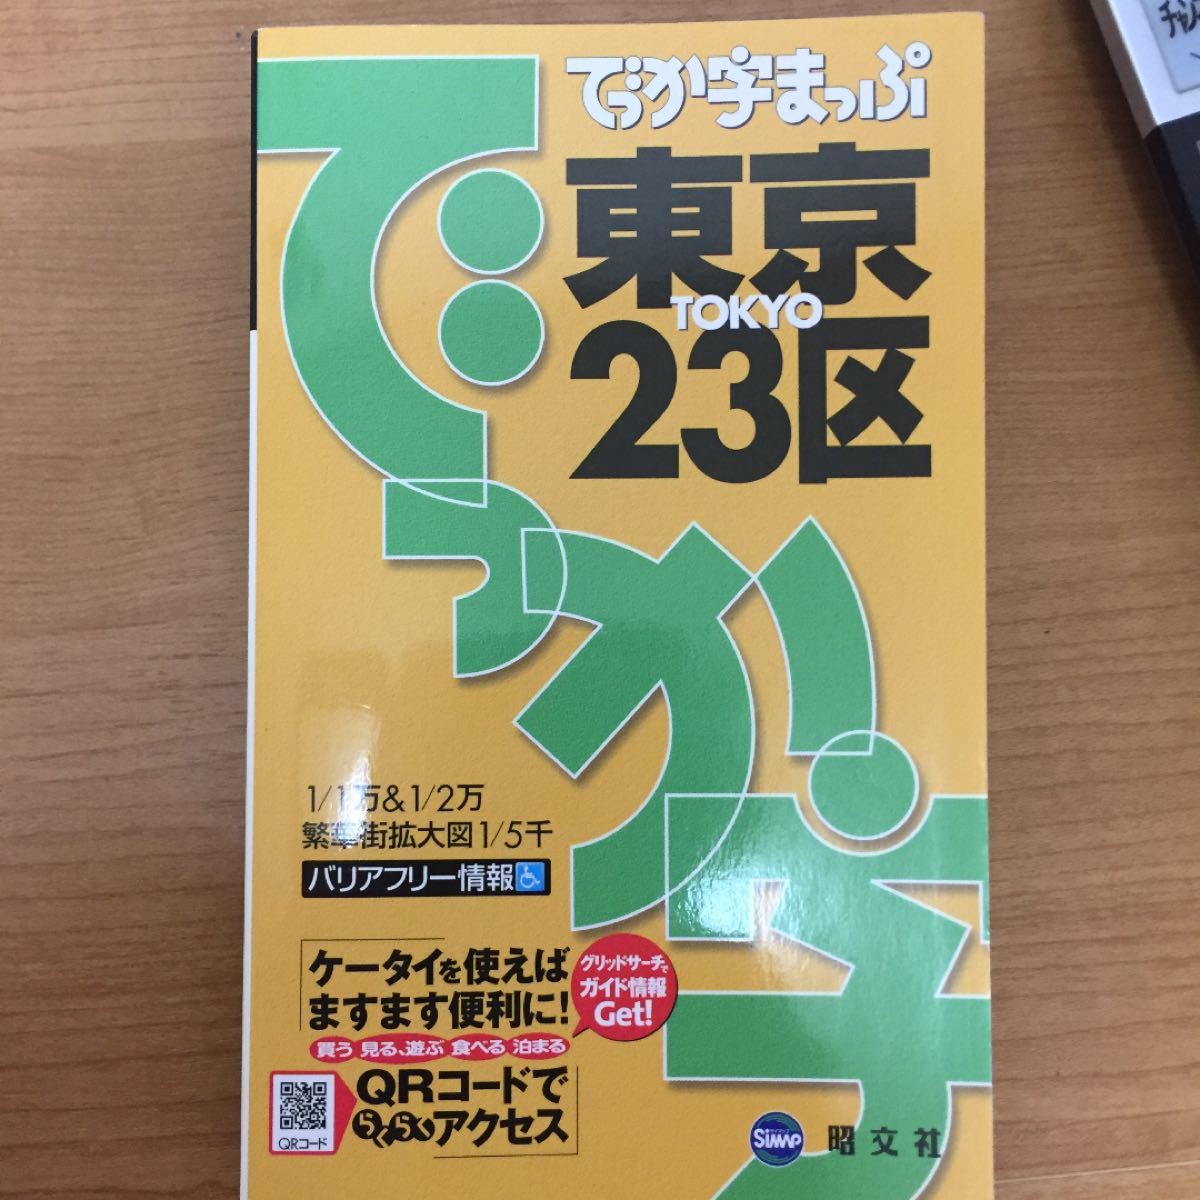 でっか字まっぷ 東京23区 2冊